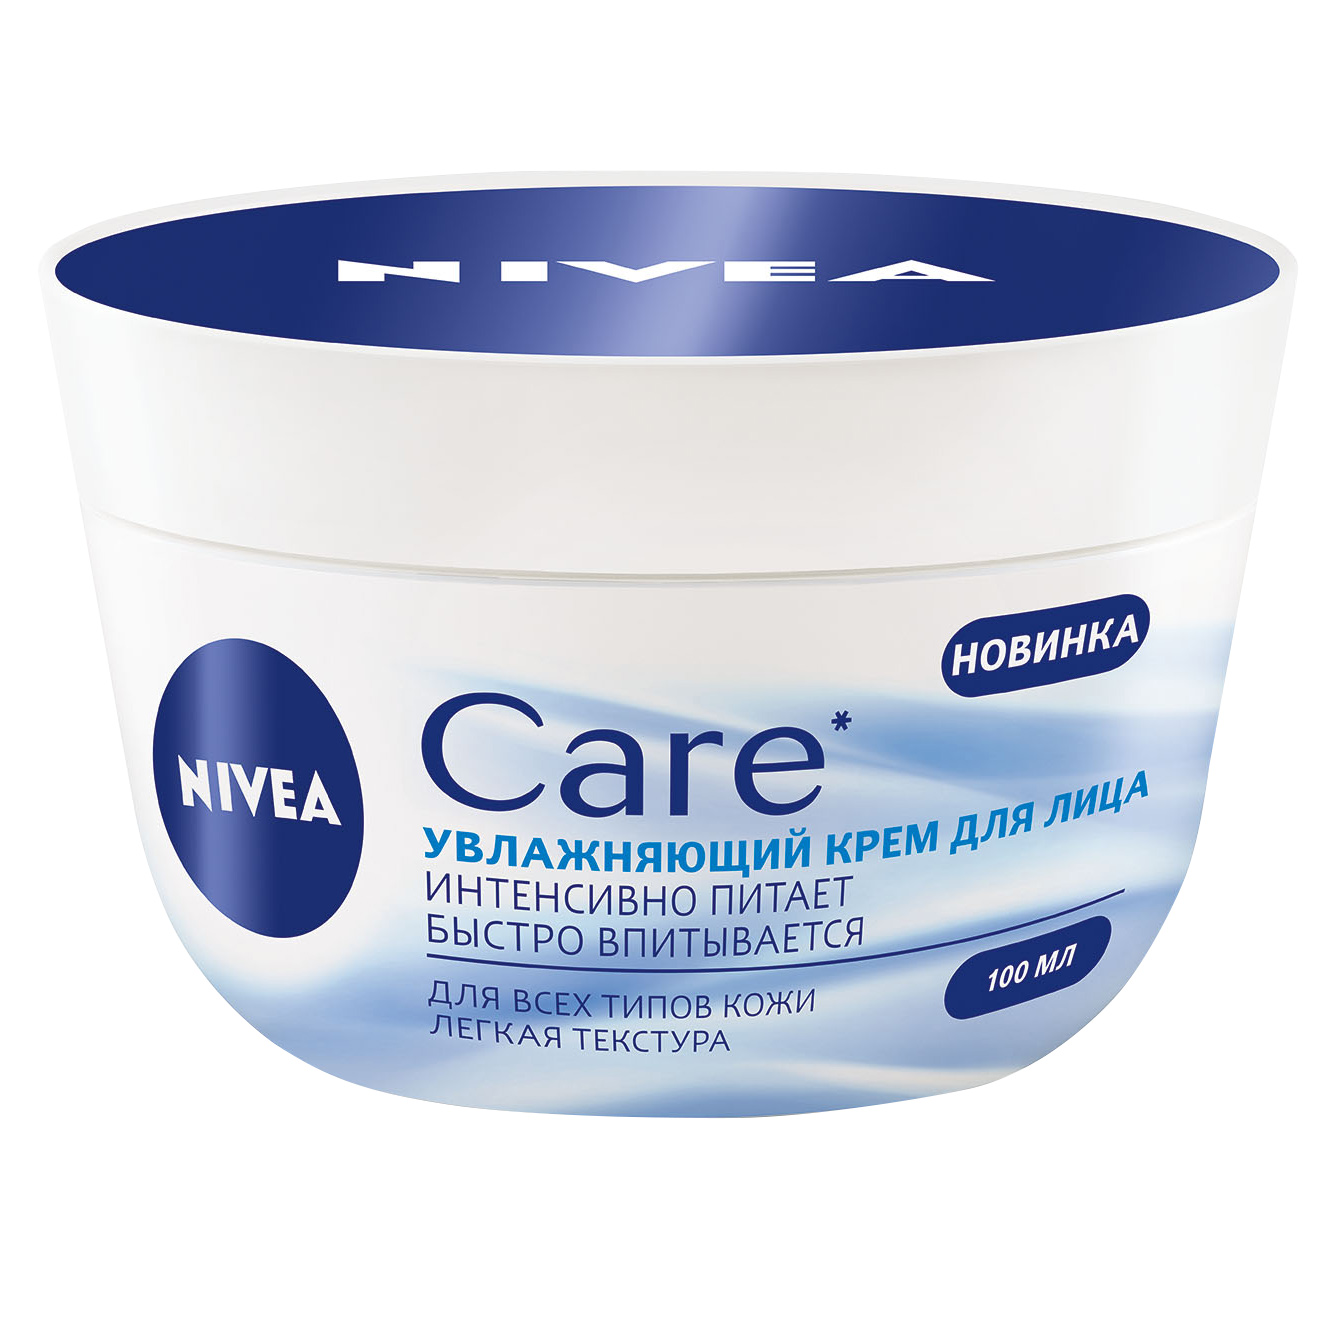 Питательный крем-легкость Nivea Care для всех типов кожи 100 мл